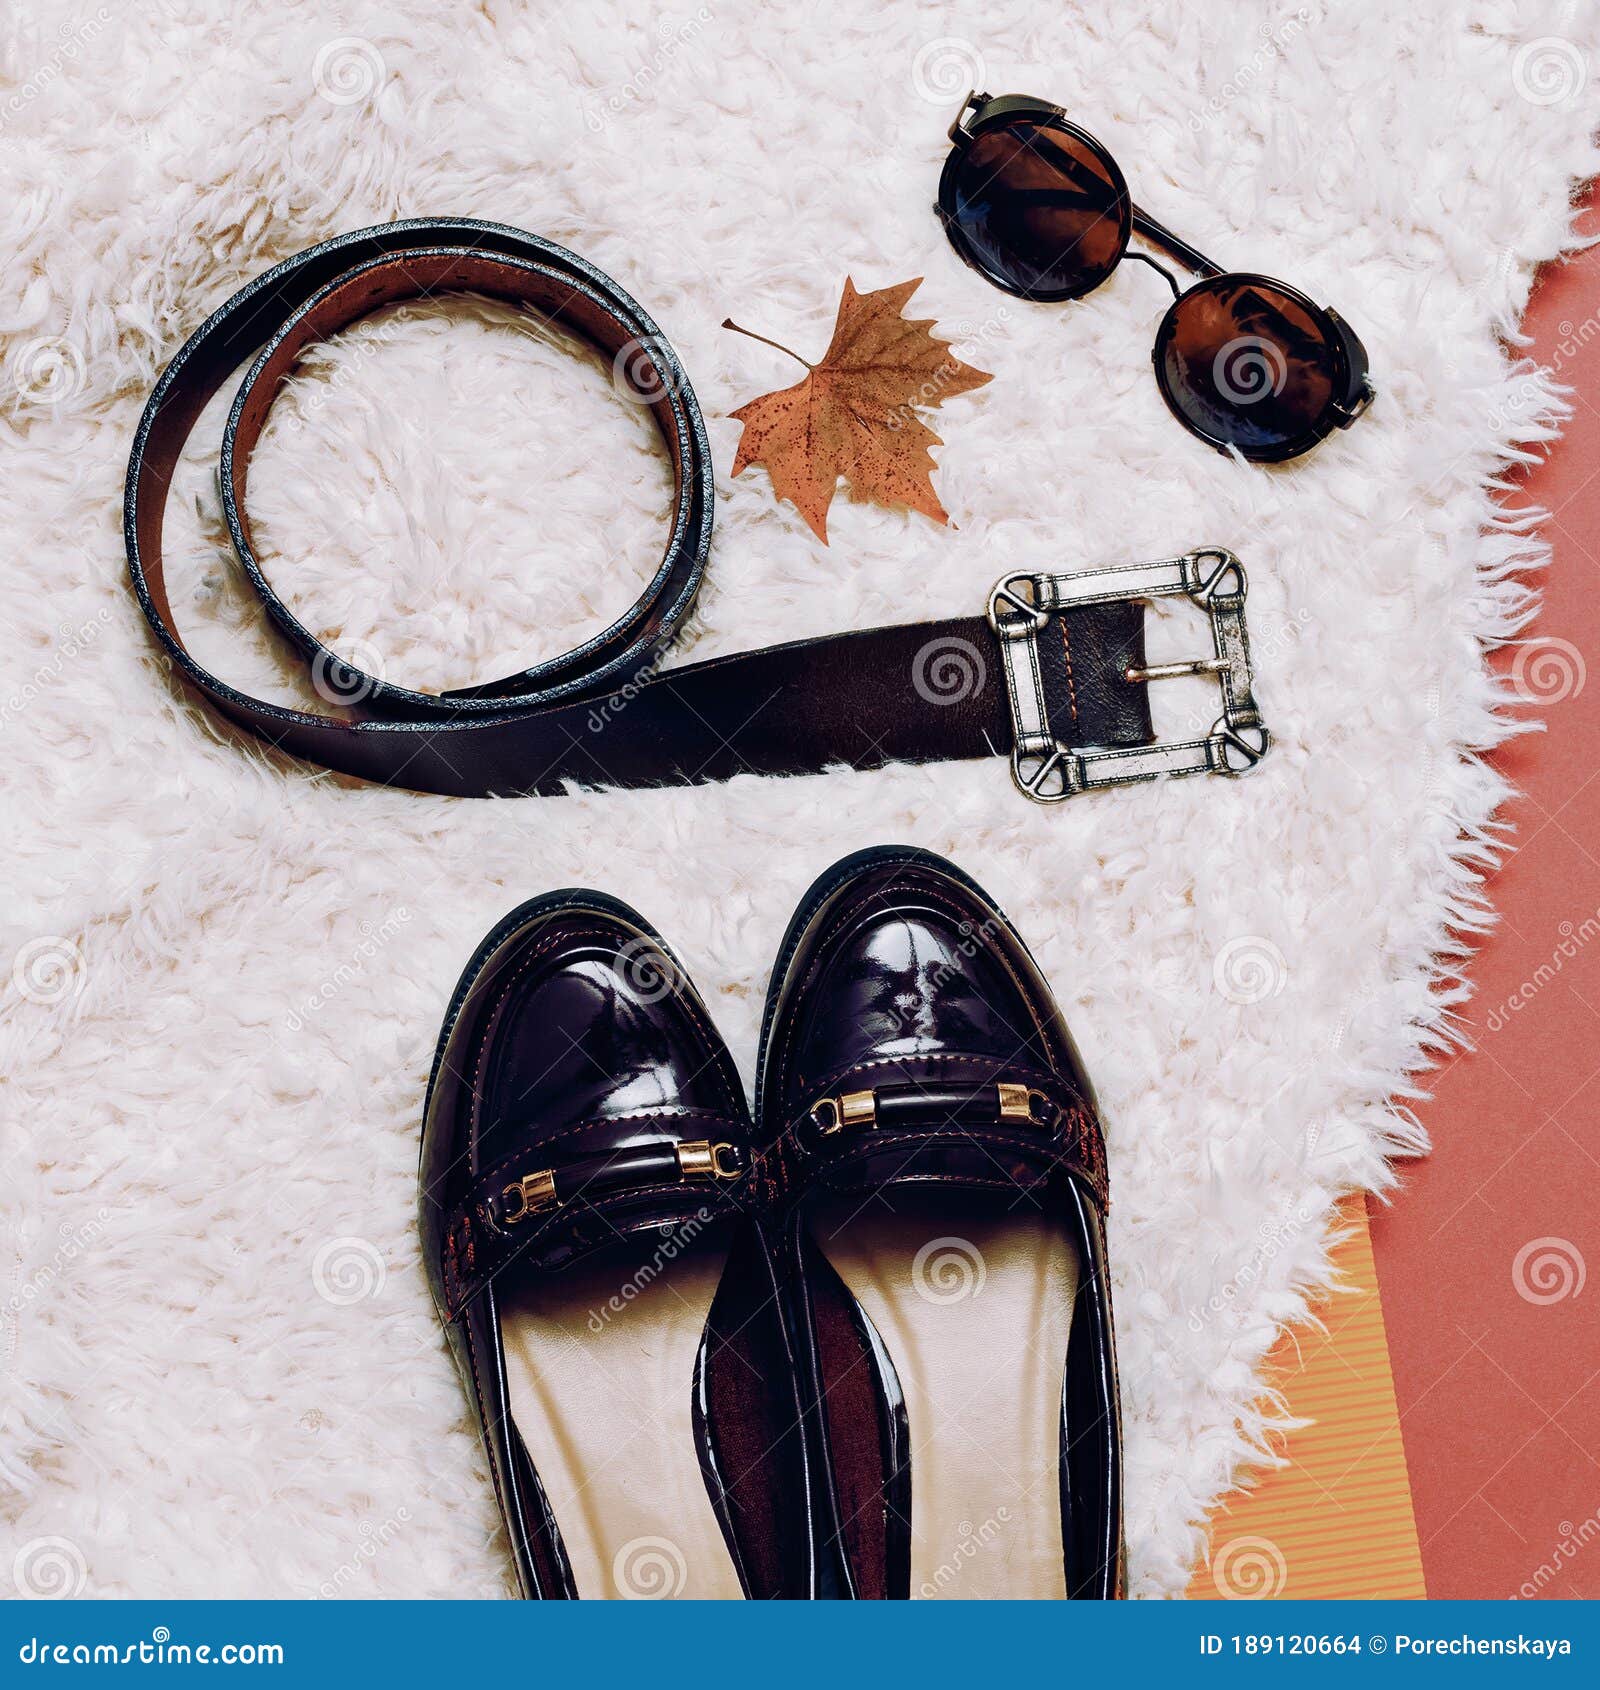 沙驰童鞋 | 初秋的换季信号·准备出发#秋季新品#_版权_信息_侵权